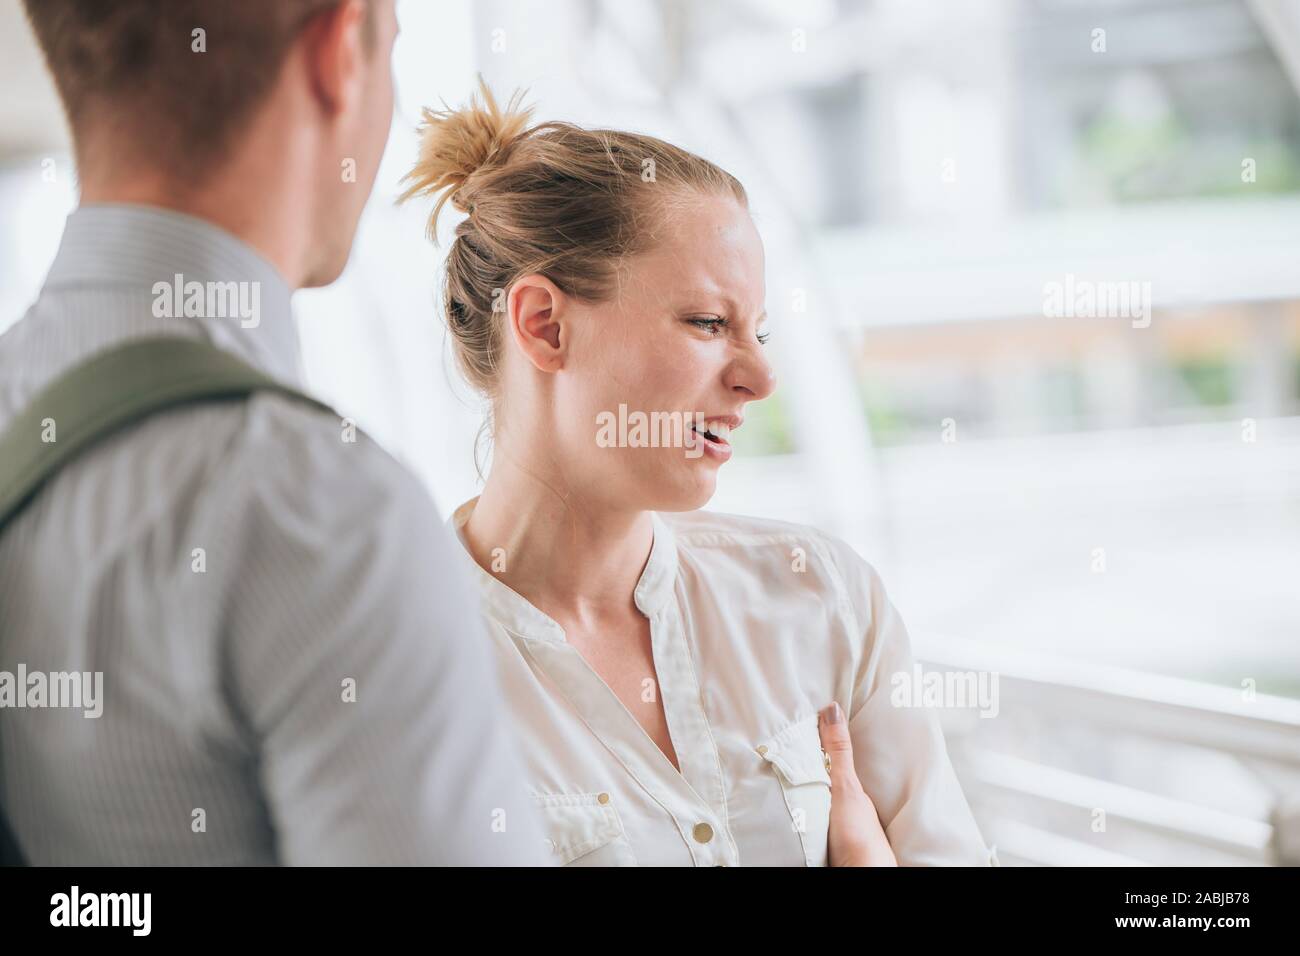 Paar argumentieren, Frau wütend und schrie, Ausdruck, wenn Streit ernsten Gespräch mit ihrem Freund machen Fehler. Stockfoto